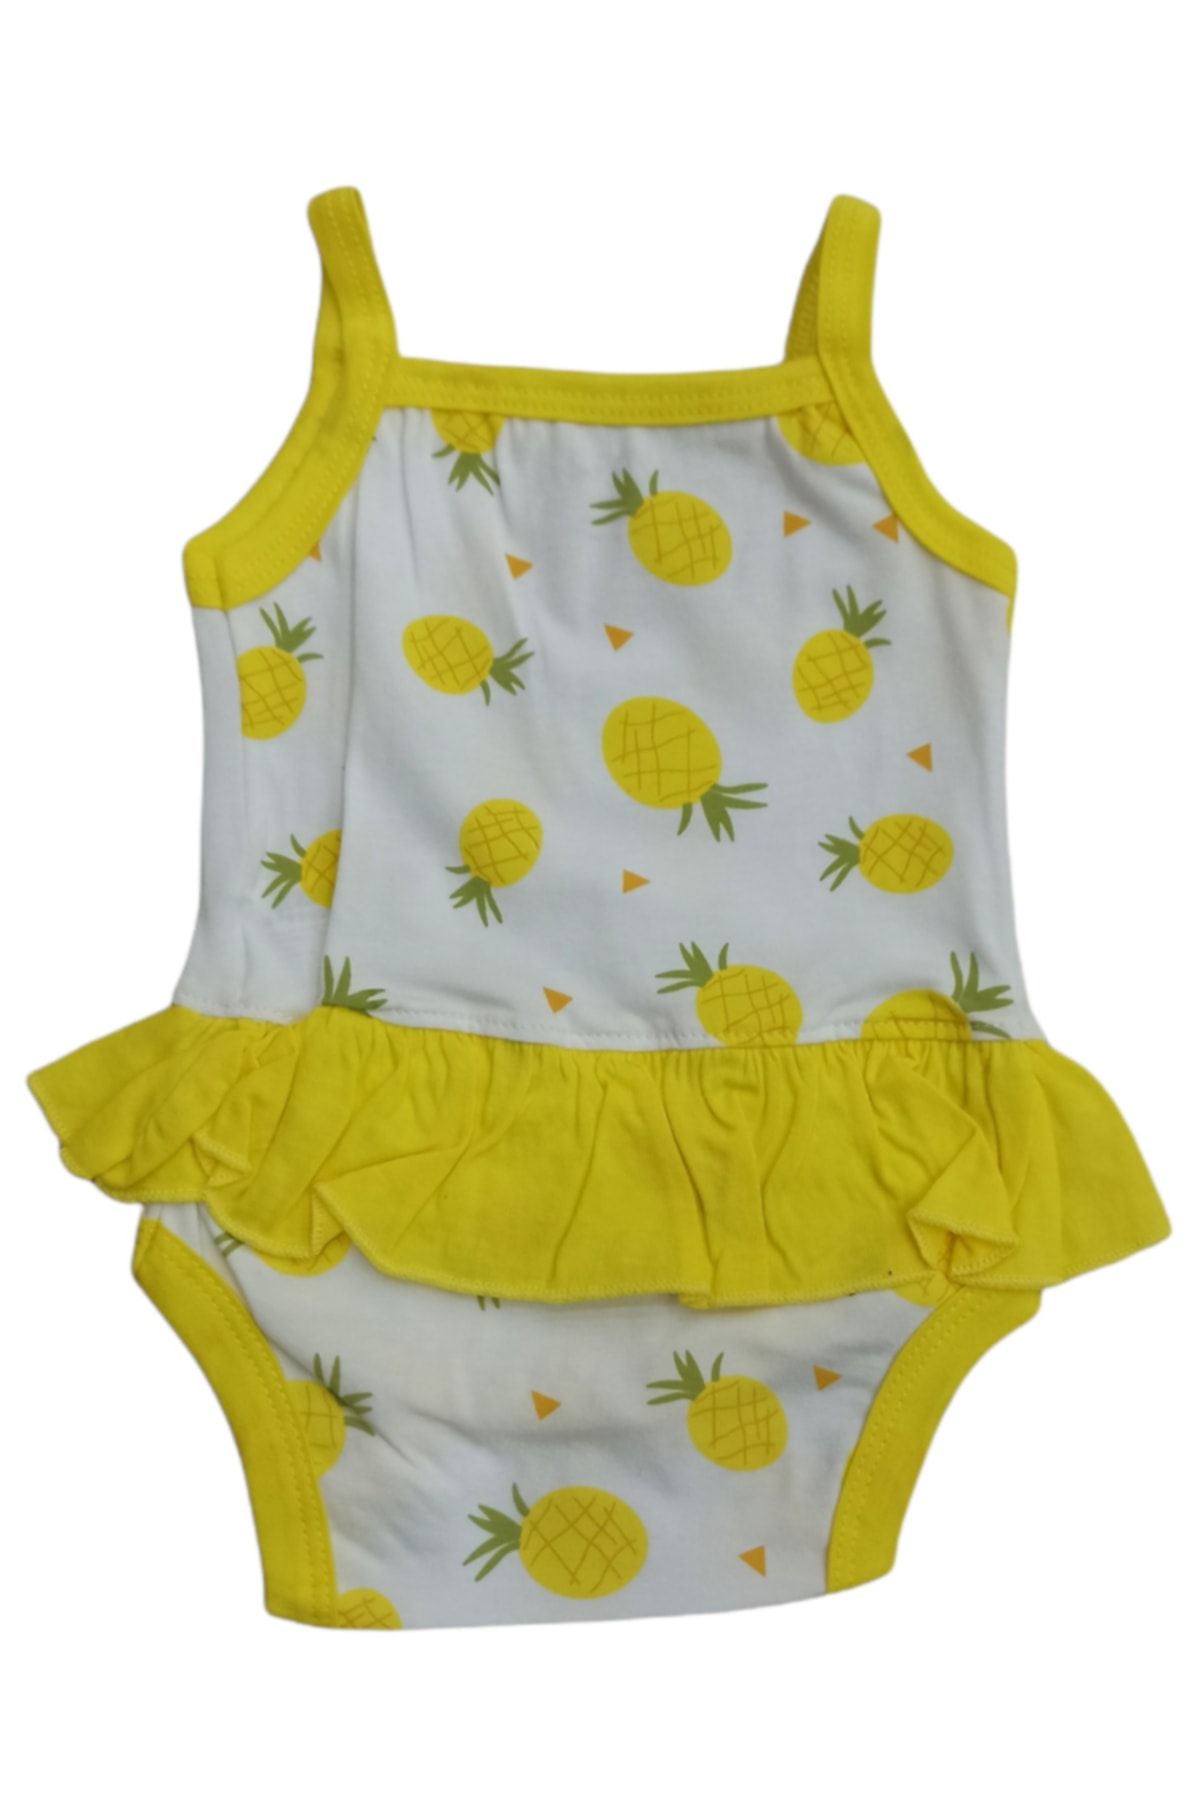 Aziz Bebe Kız Bebek Ip Askılı Ananas Desenli Badi 0-12 Ay